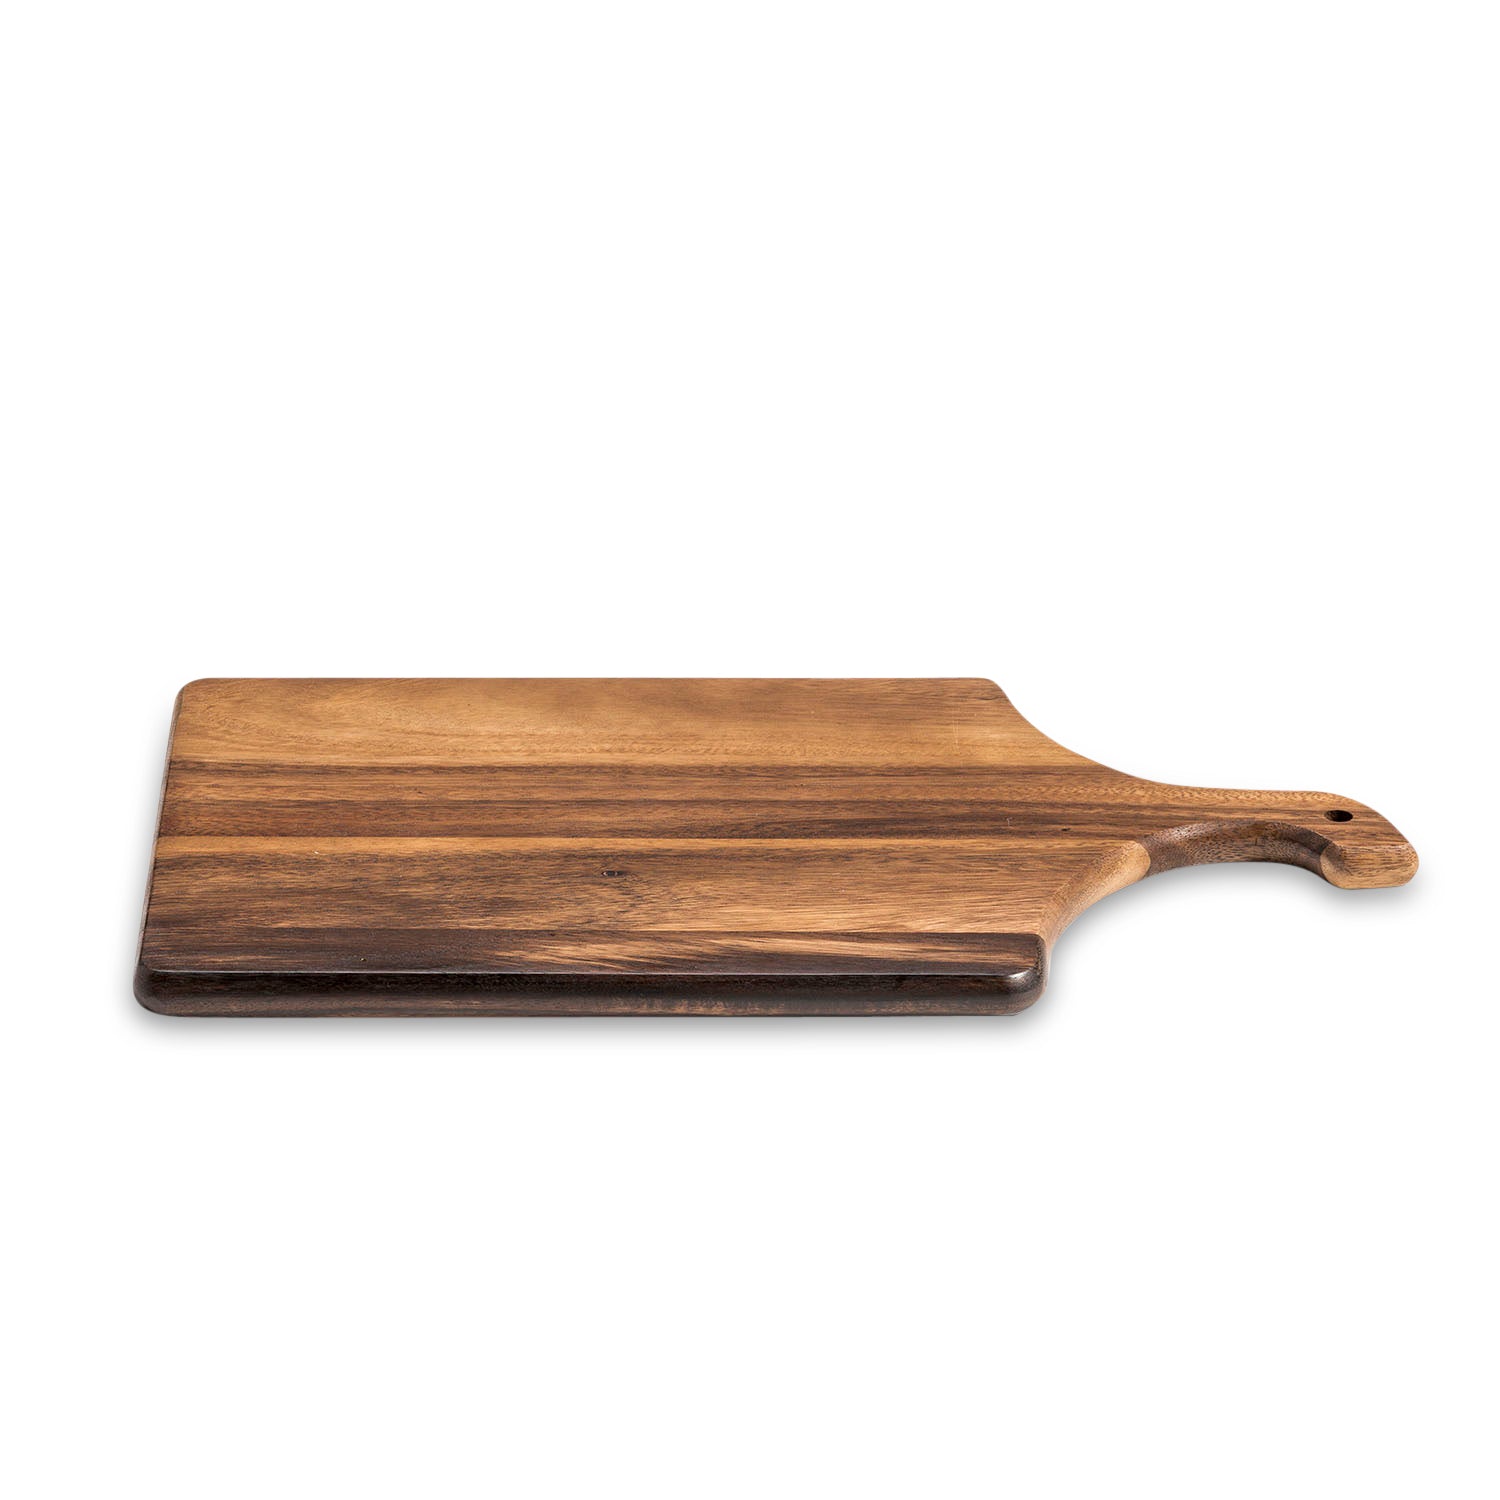 Acacia Wood Cutting Board, 2 Piece Set